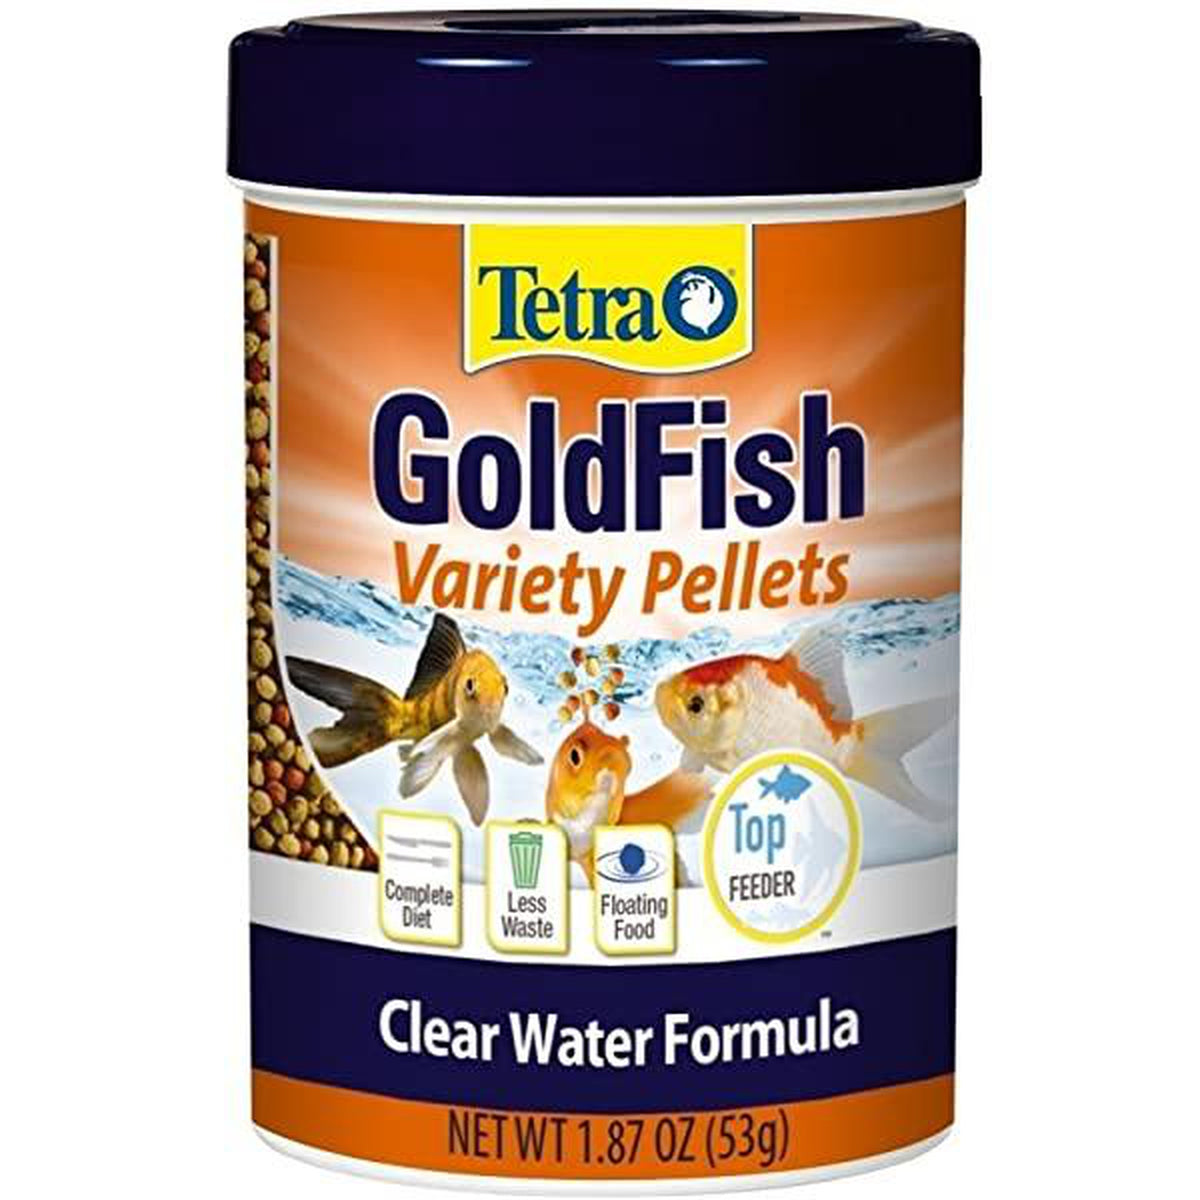 Tetra Goldfish Variety Pellets